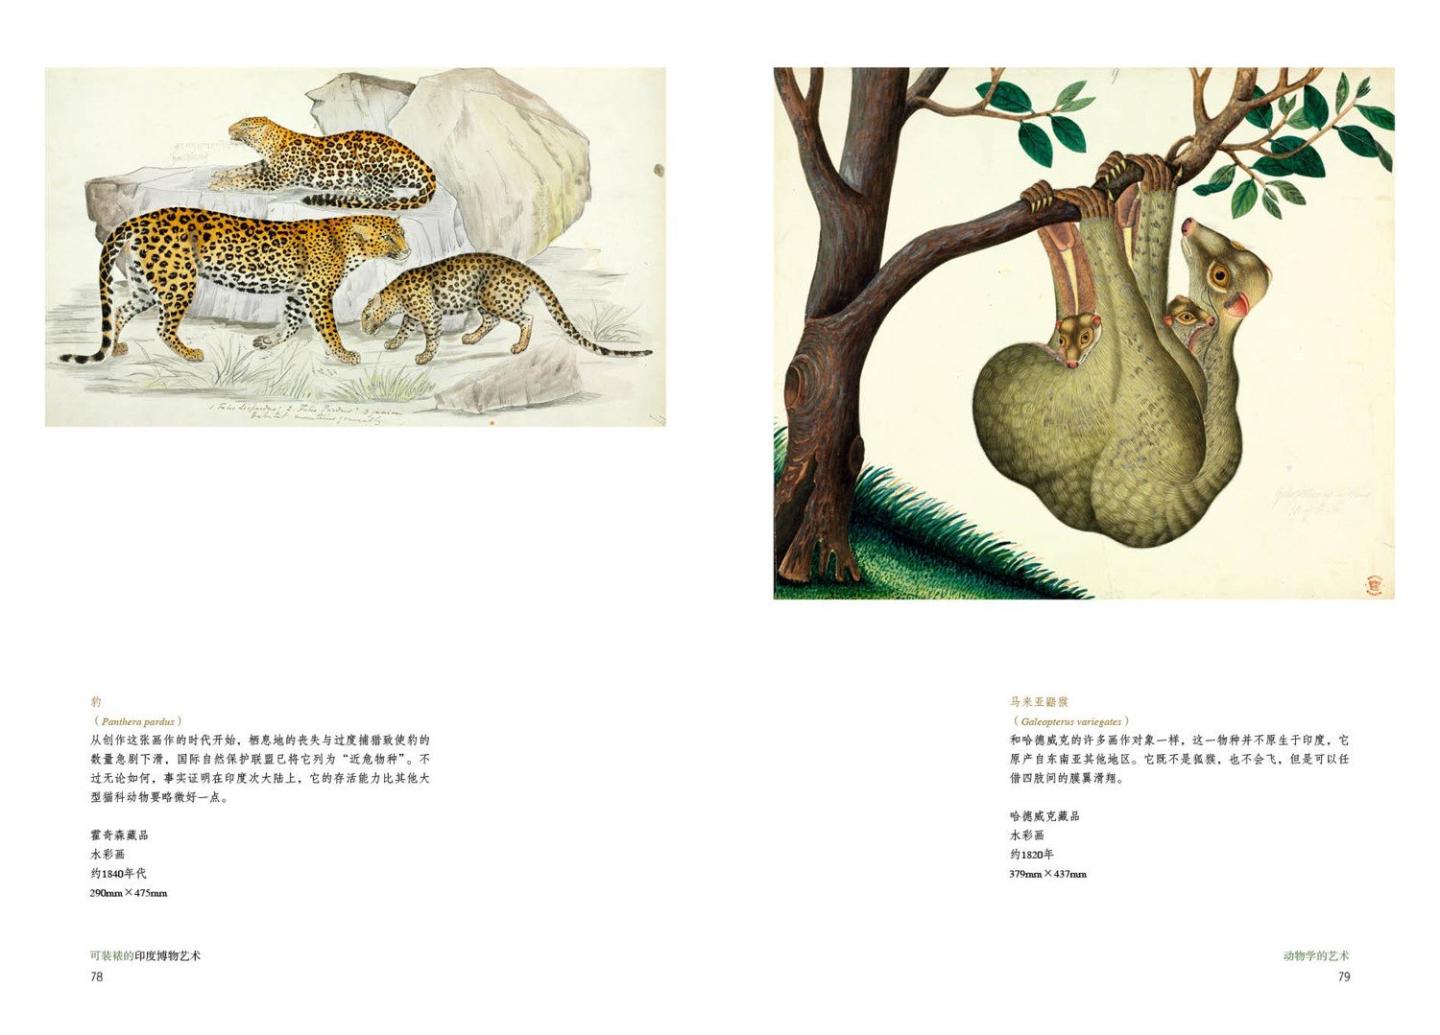 印制很精美，彩图清楚，看着不错，有意思，还有一本对应是中国的博物艺术。